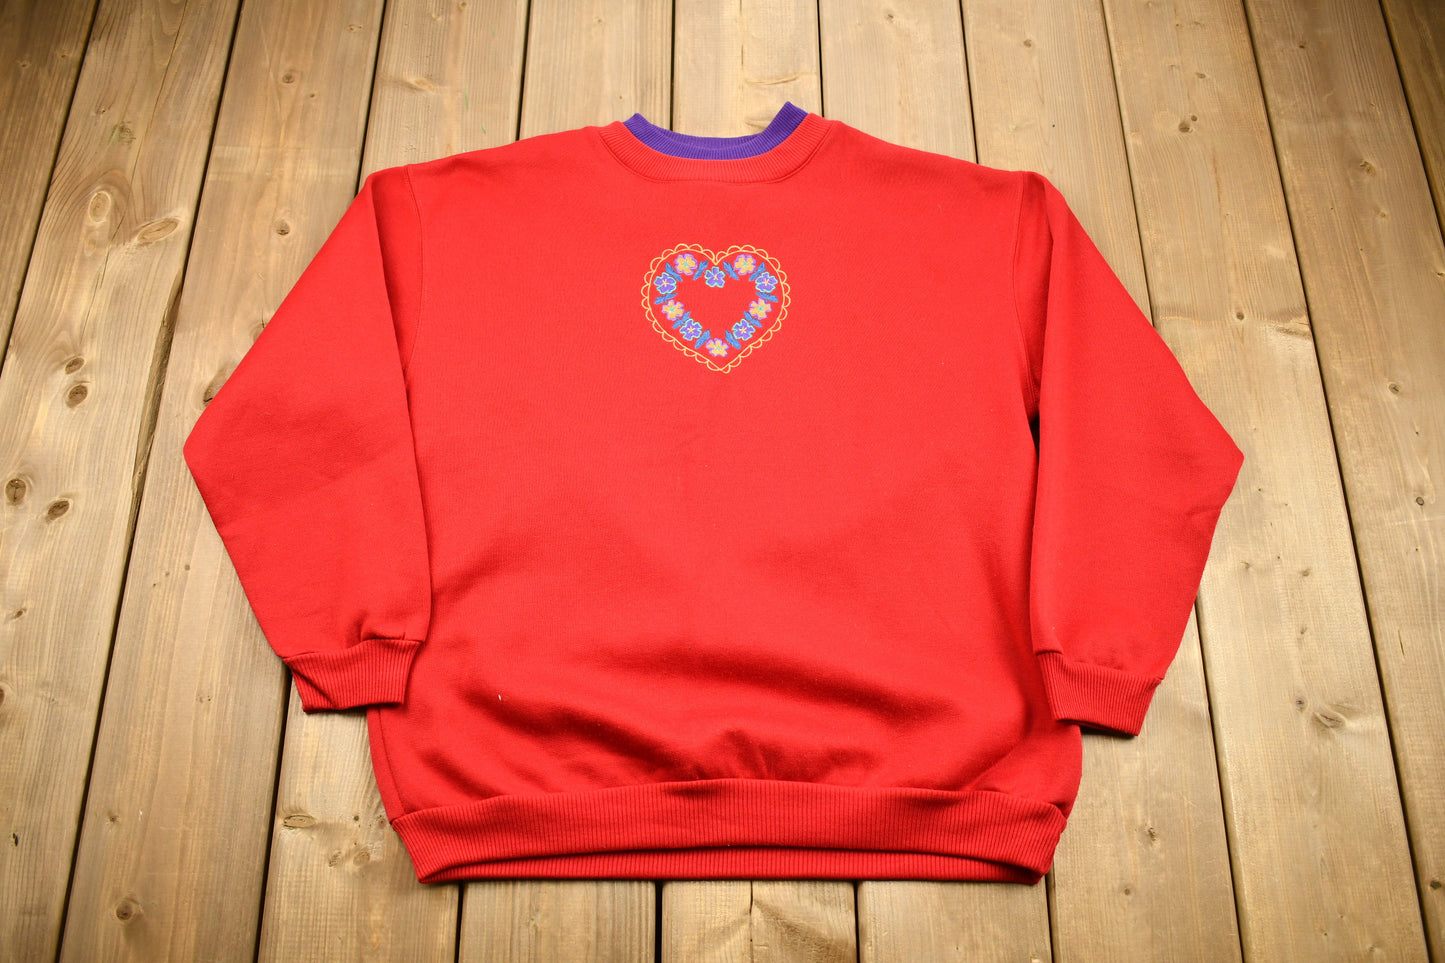 Vintage 1990s Fairset Embroidered Heart Crewneck / Vintage Love & Hearts Sweatshirt / Streetwear / Grandma Style